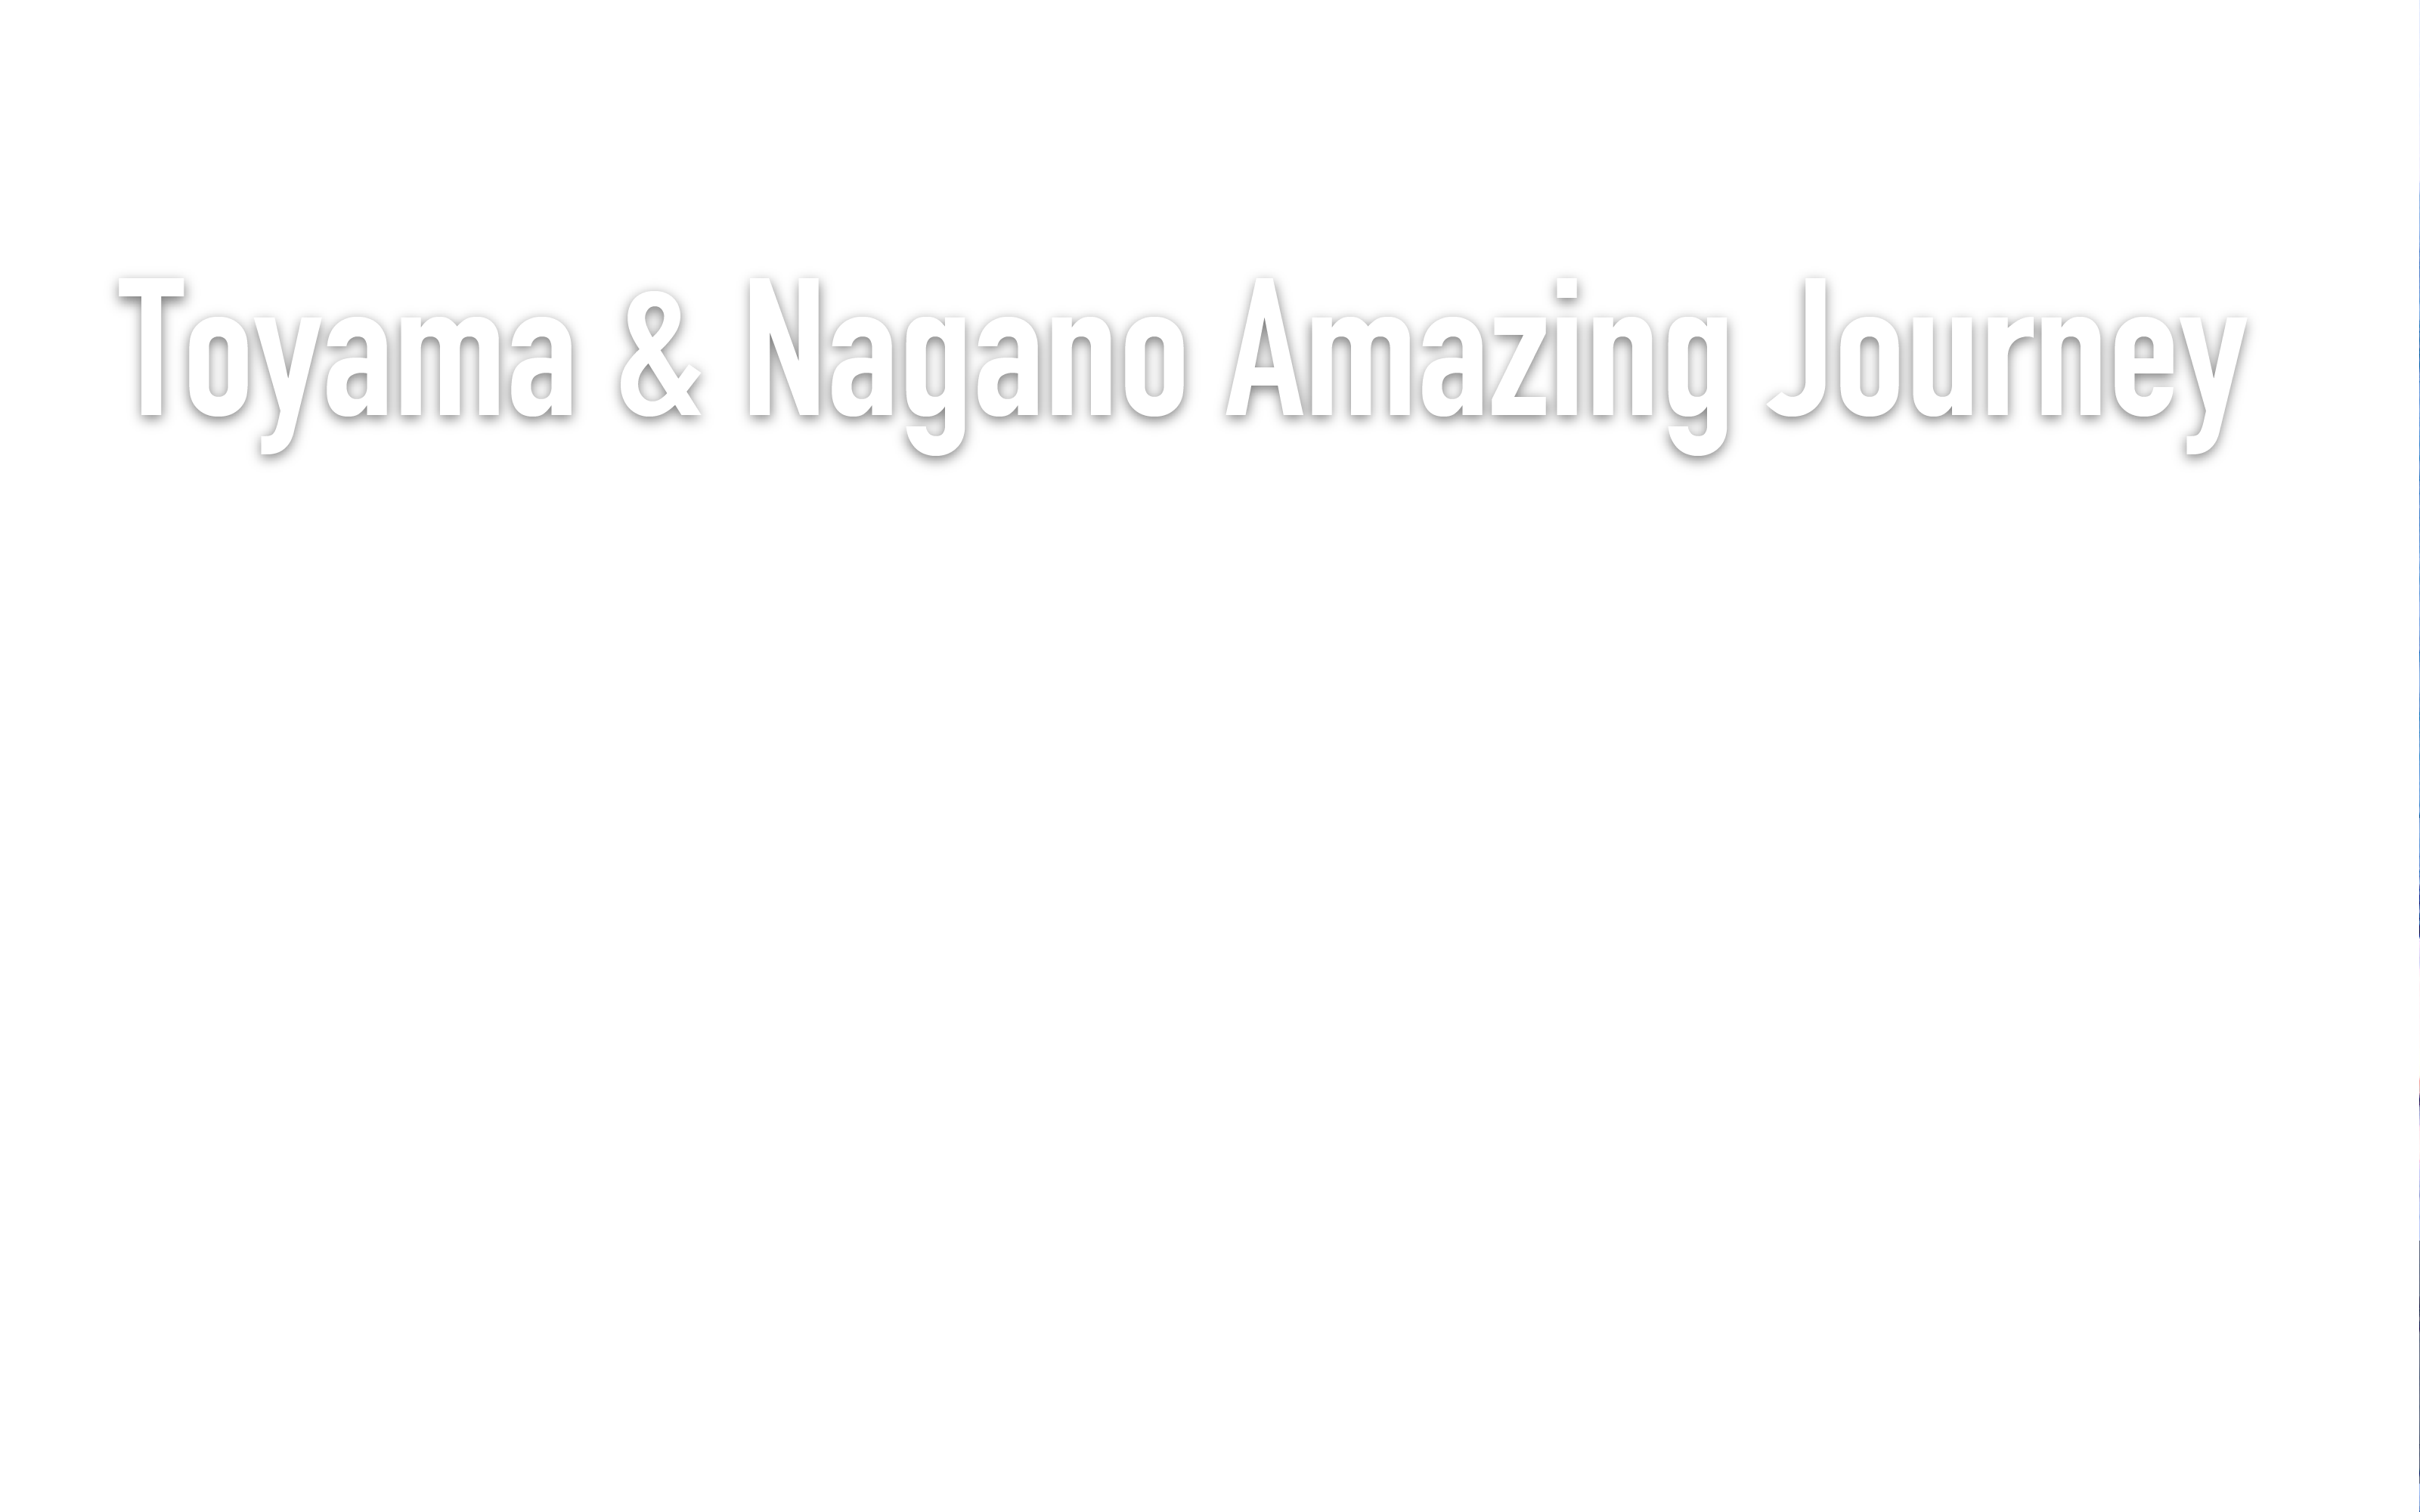 TOYAMA & NAGANO AMAZING JOURNEY